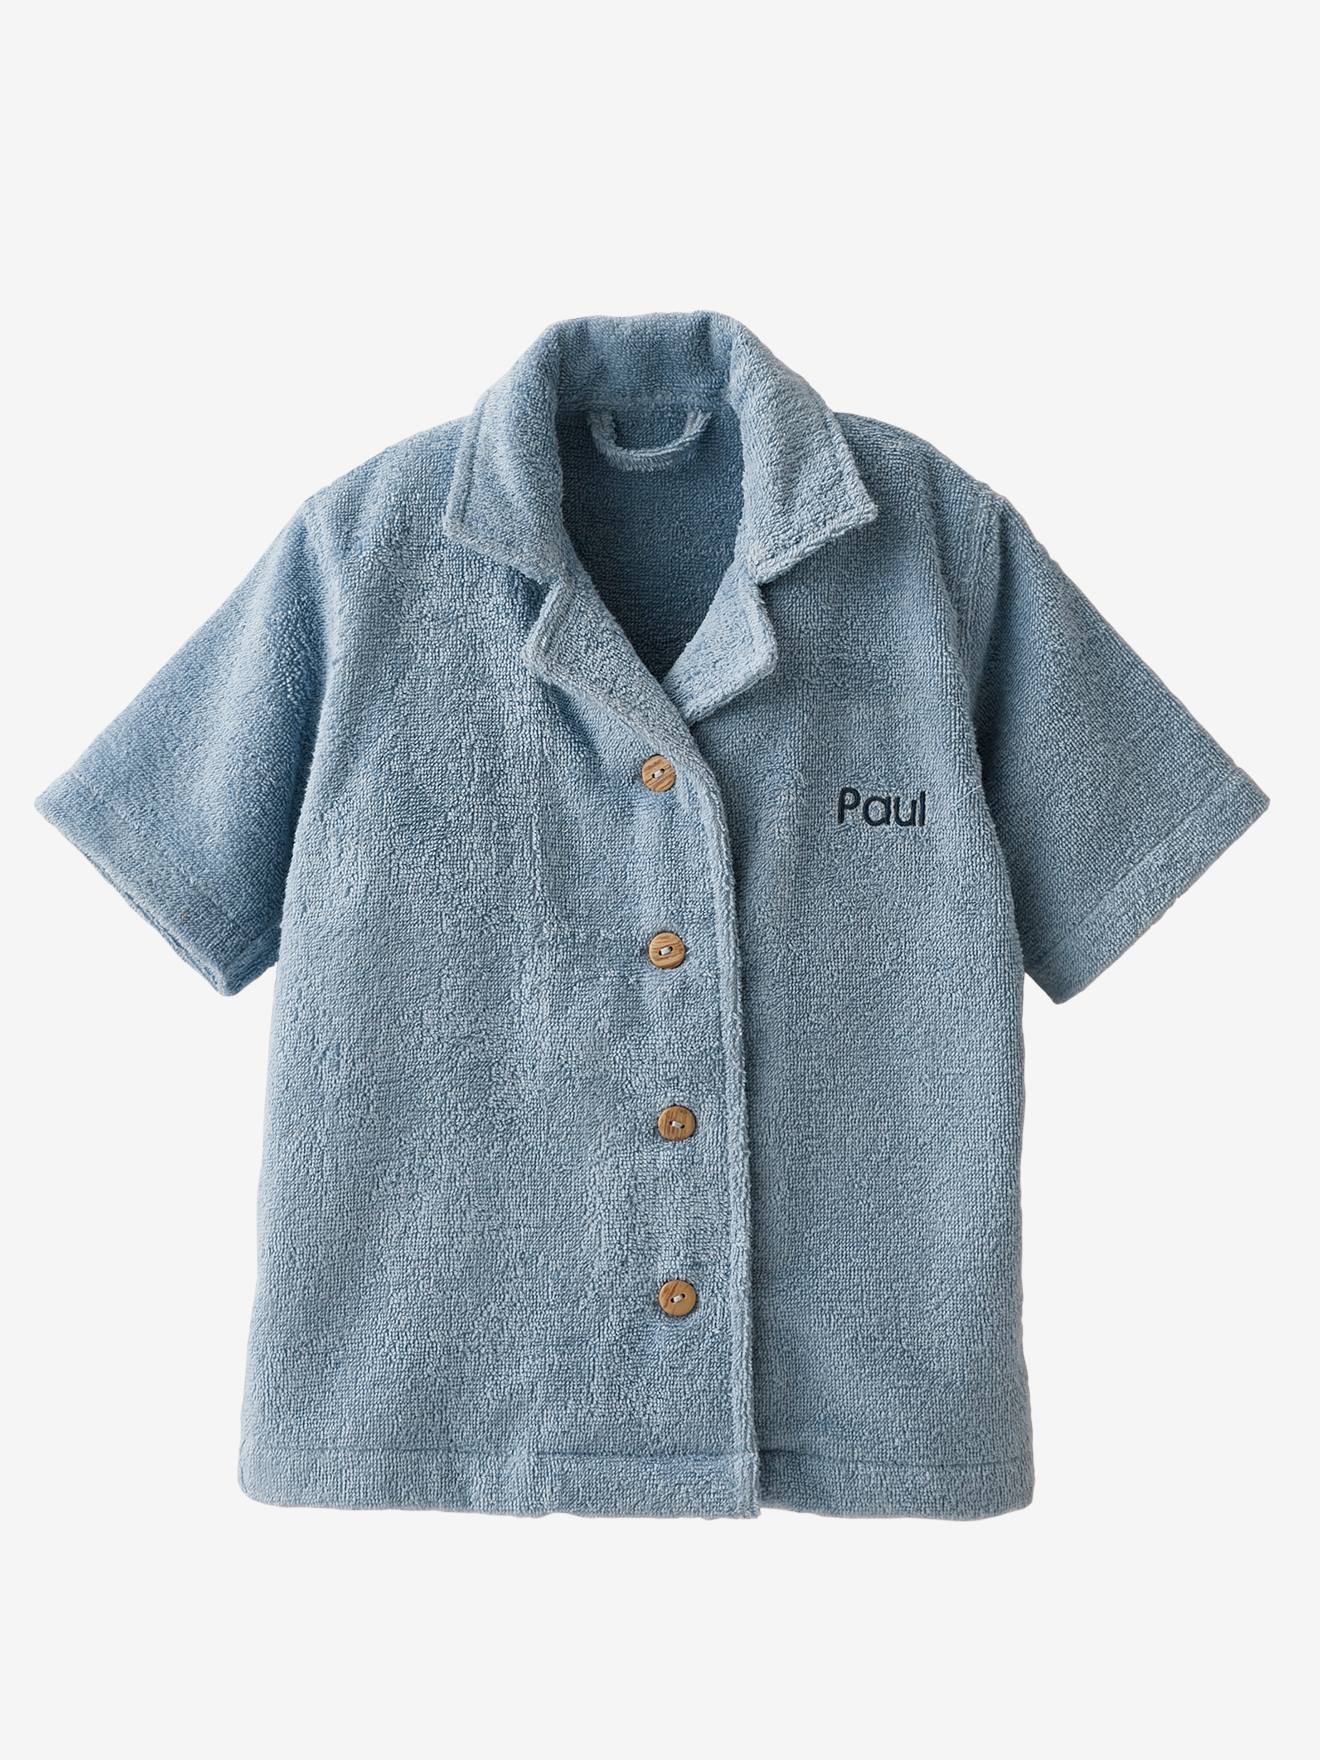 Albornoz estilo blusa personalizable de algodón reciclado para bebé - beige